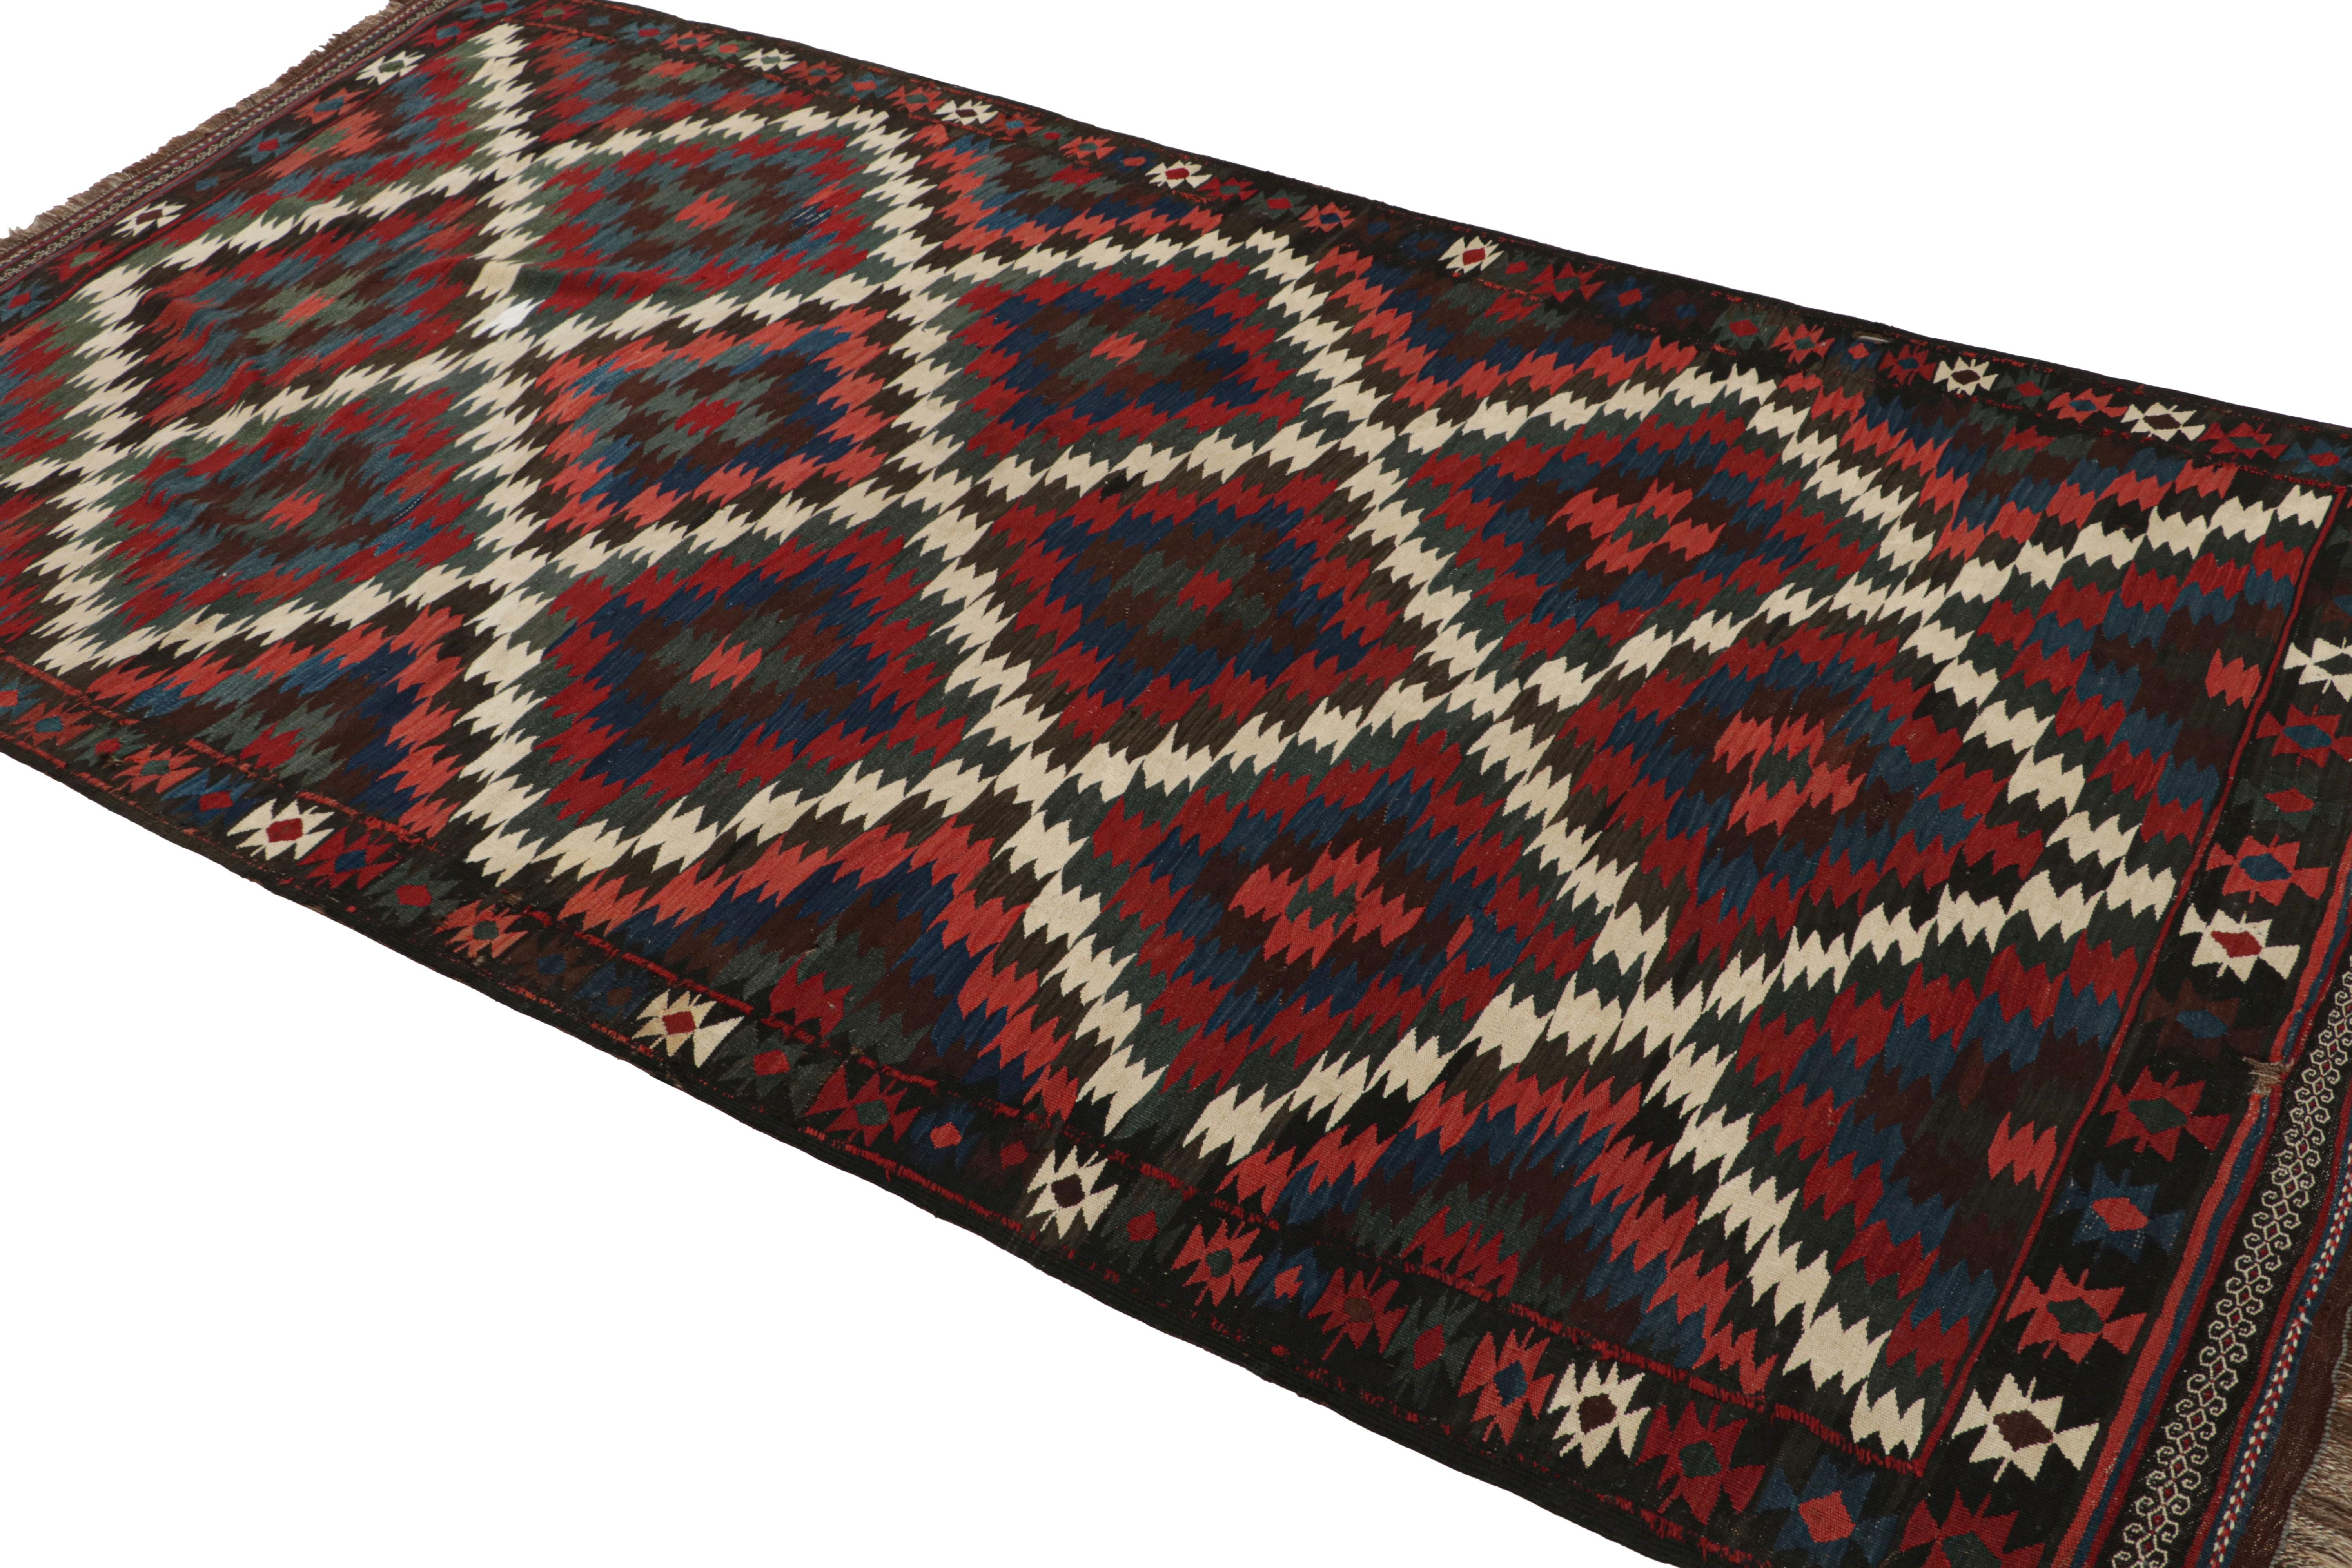 Das aus der Türkei stammende, handgewebte Wolltuch 5x10 (ca. 1950-1960) zeichnet sich durch seine polychromen Farben aus, die einen traditionellen Schwerpunkt bilden.  

Über das Design: 

Kenner können seine Farbgebung bewundern, eine reiche